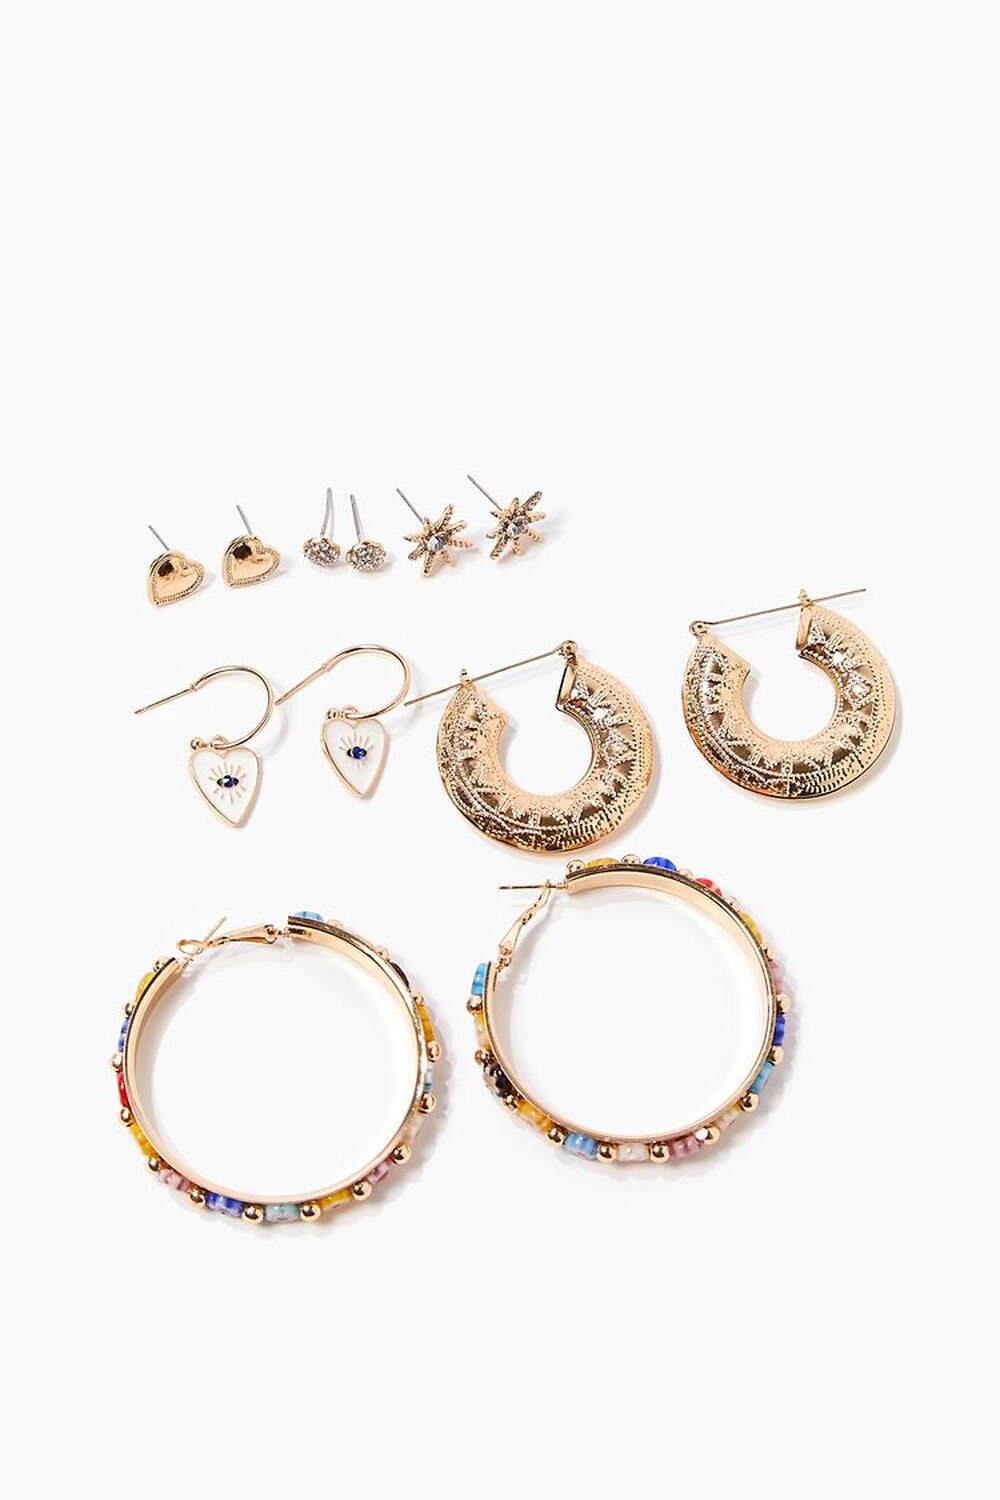 BLUE/GOLD Beaded Stud & Hoop Earrings Set, image 1